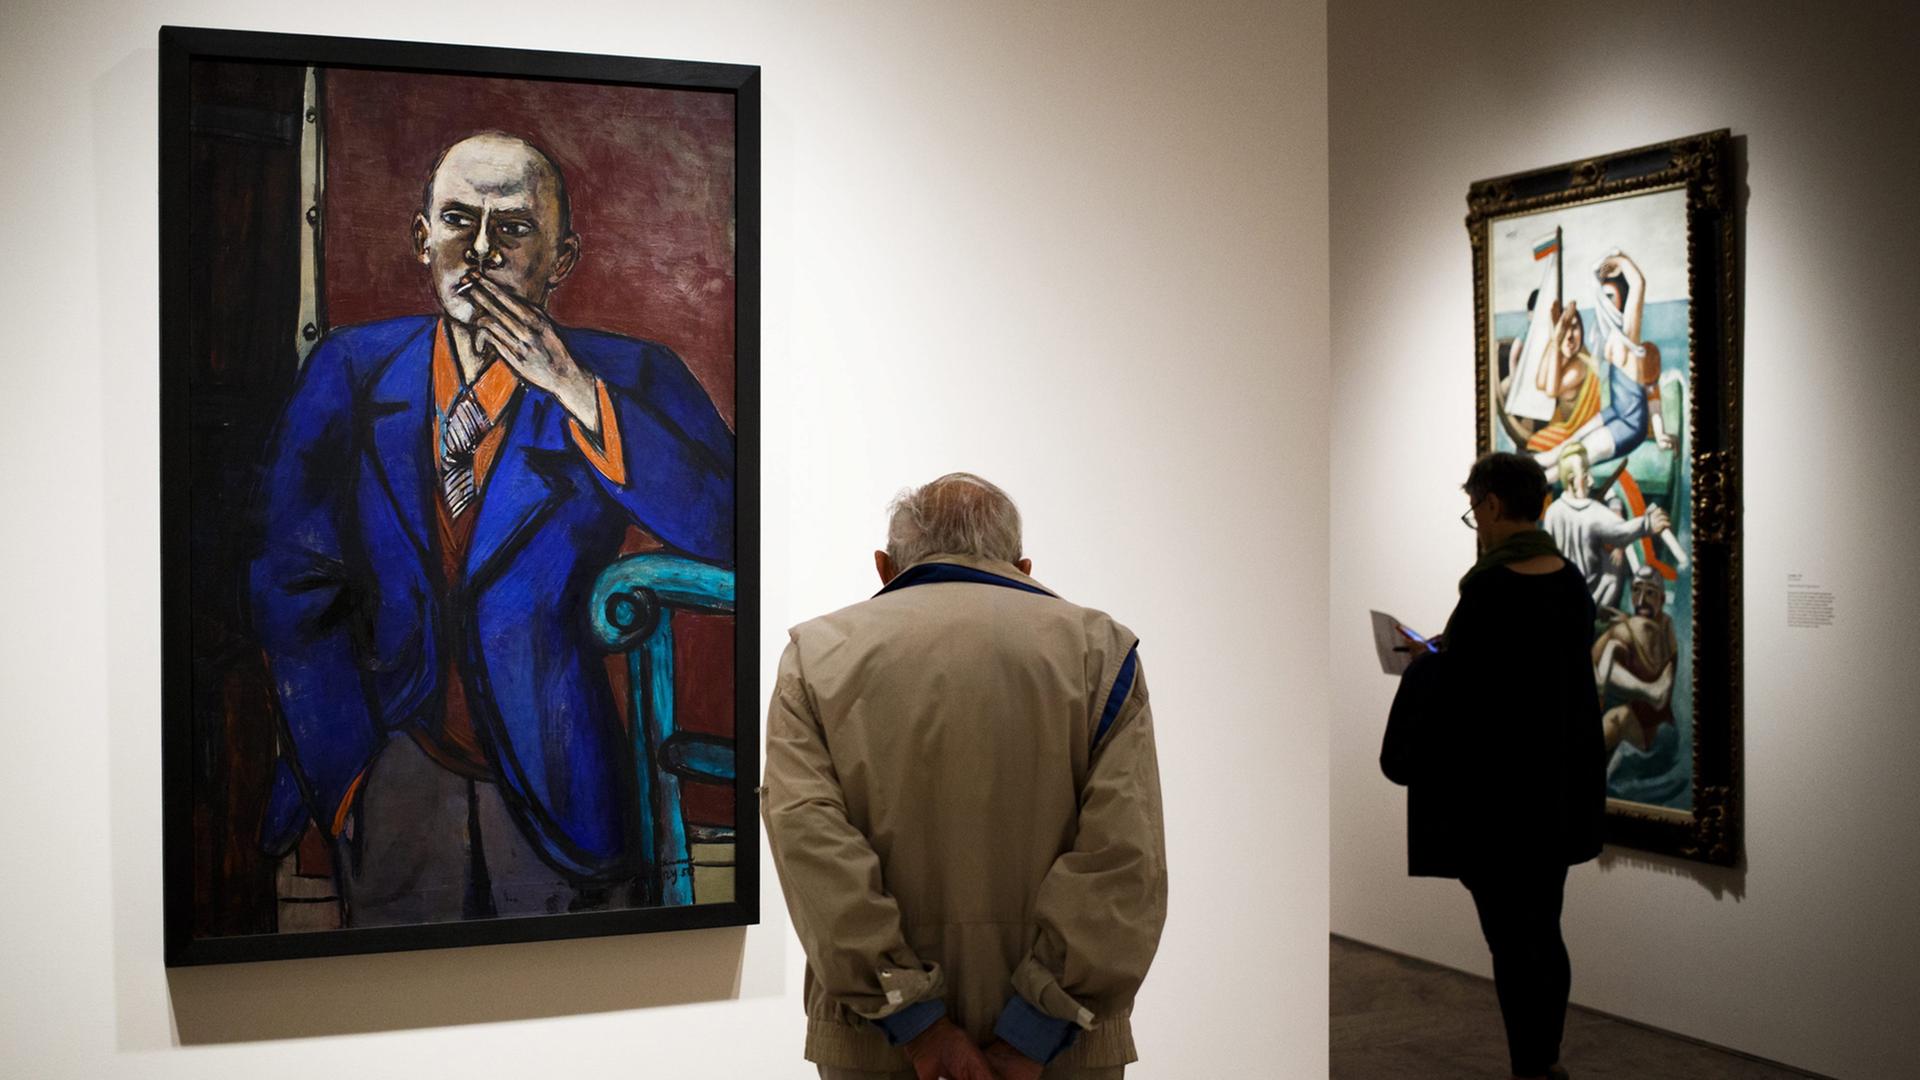 "Selbstporträt im blauen Jackett" in Der Ausstellung "Max Beckmann in New York" im Metropolitian Museum of Art in New York.